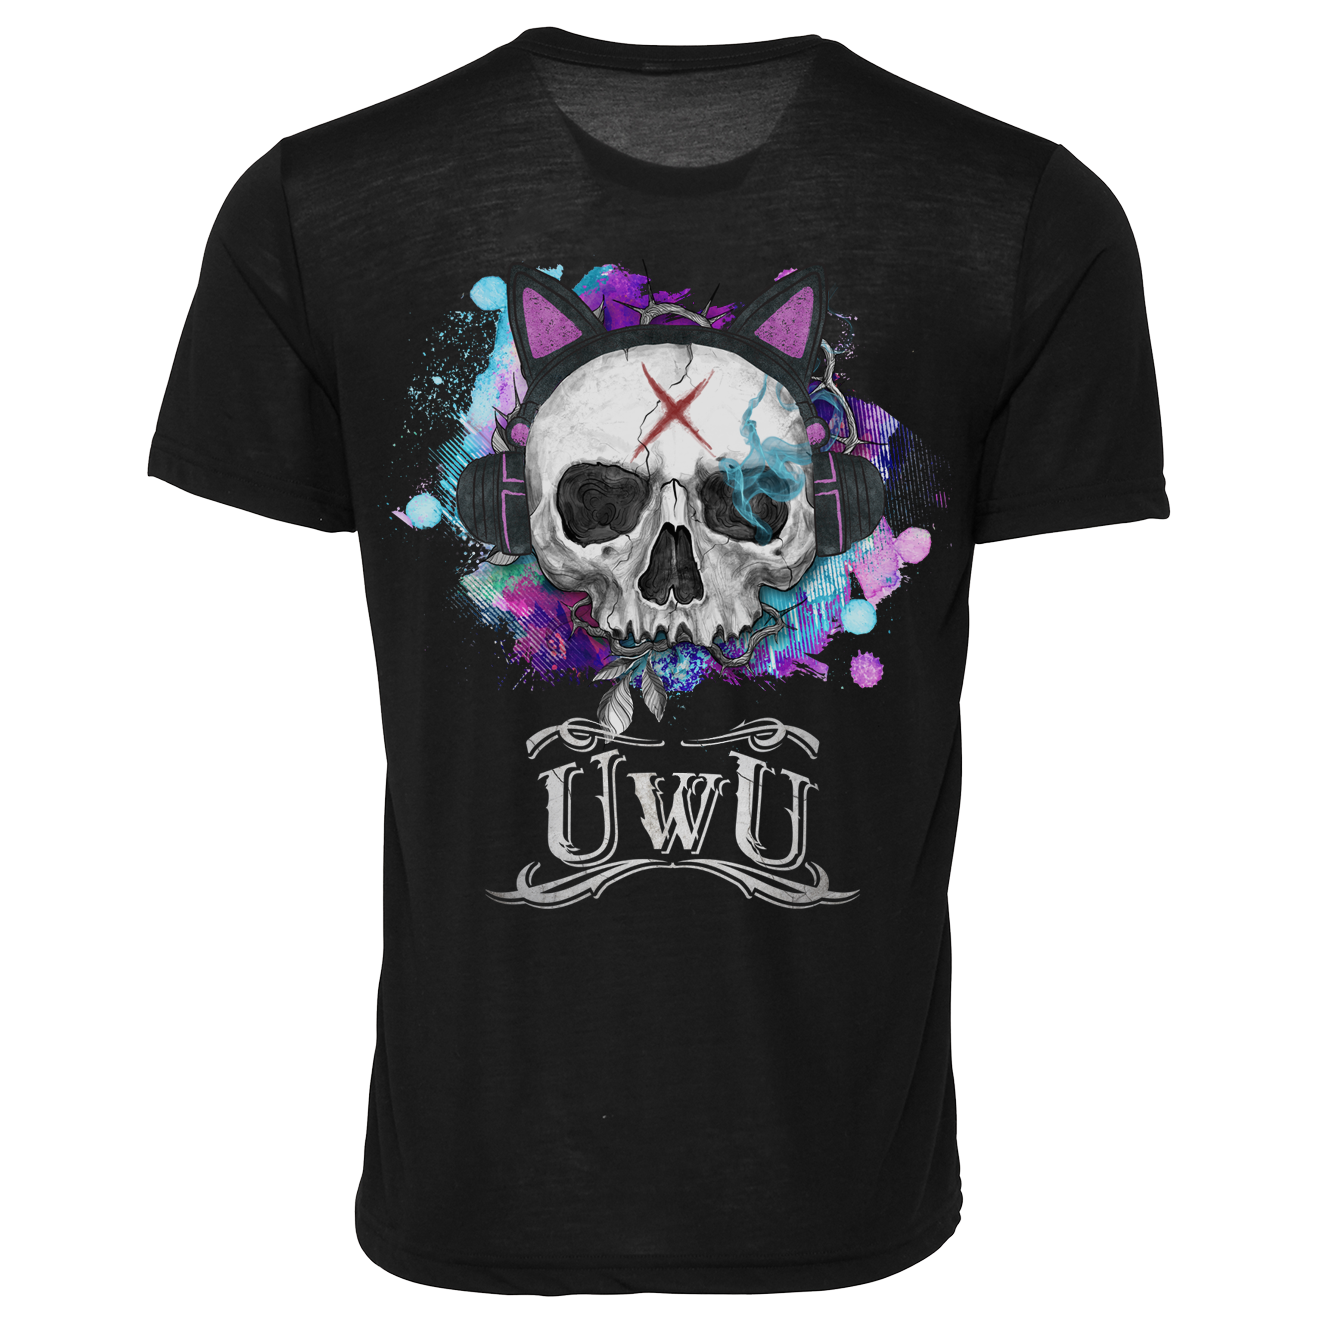 UwU x Skull ~ Tshirt